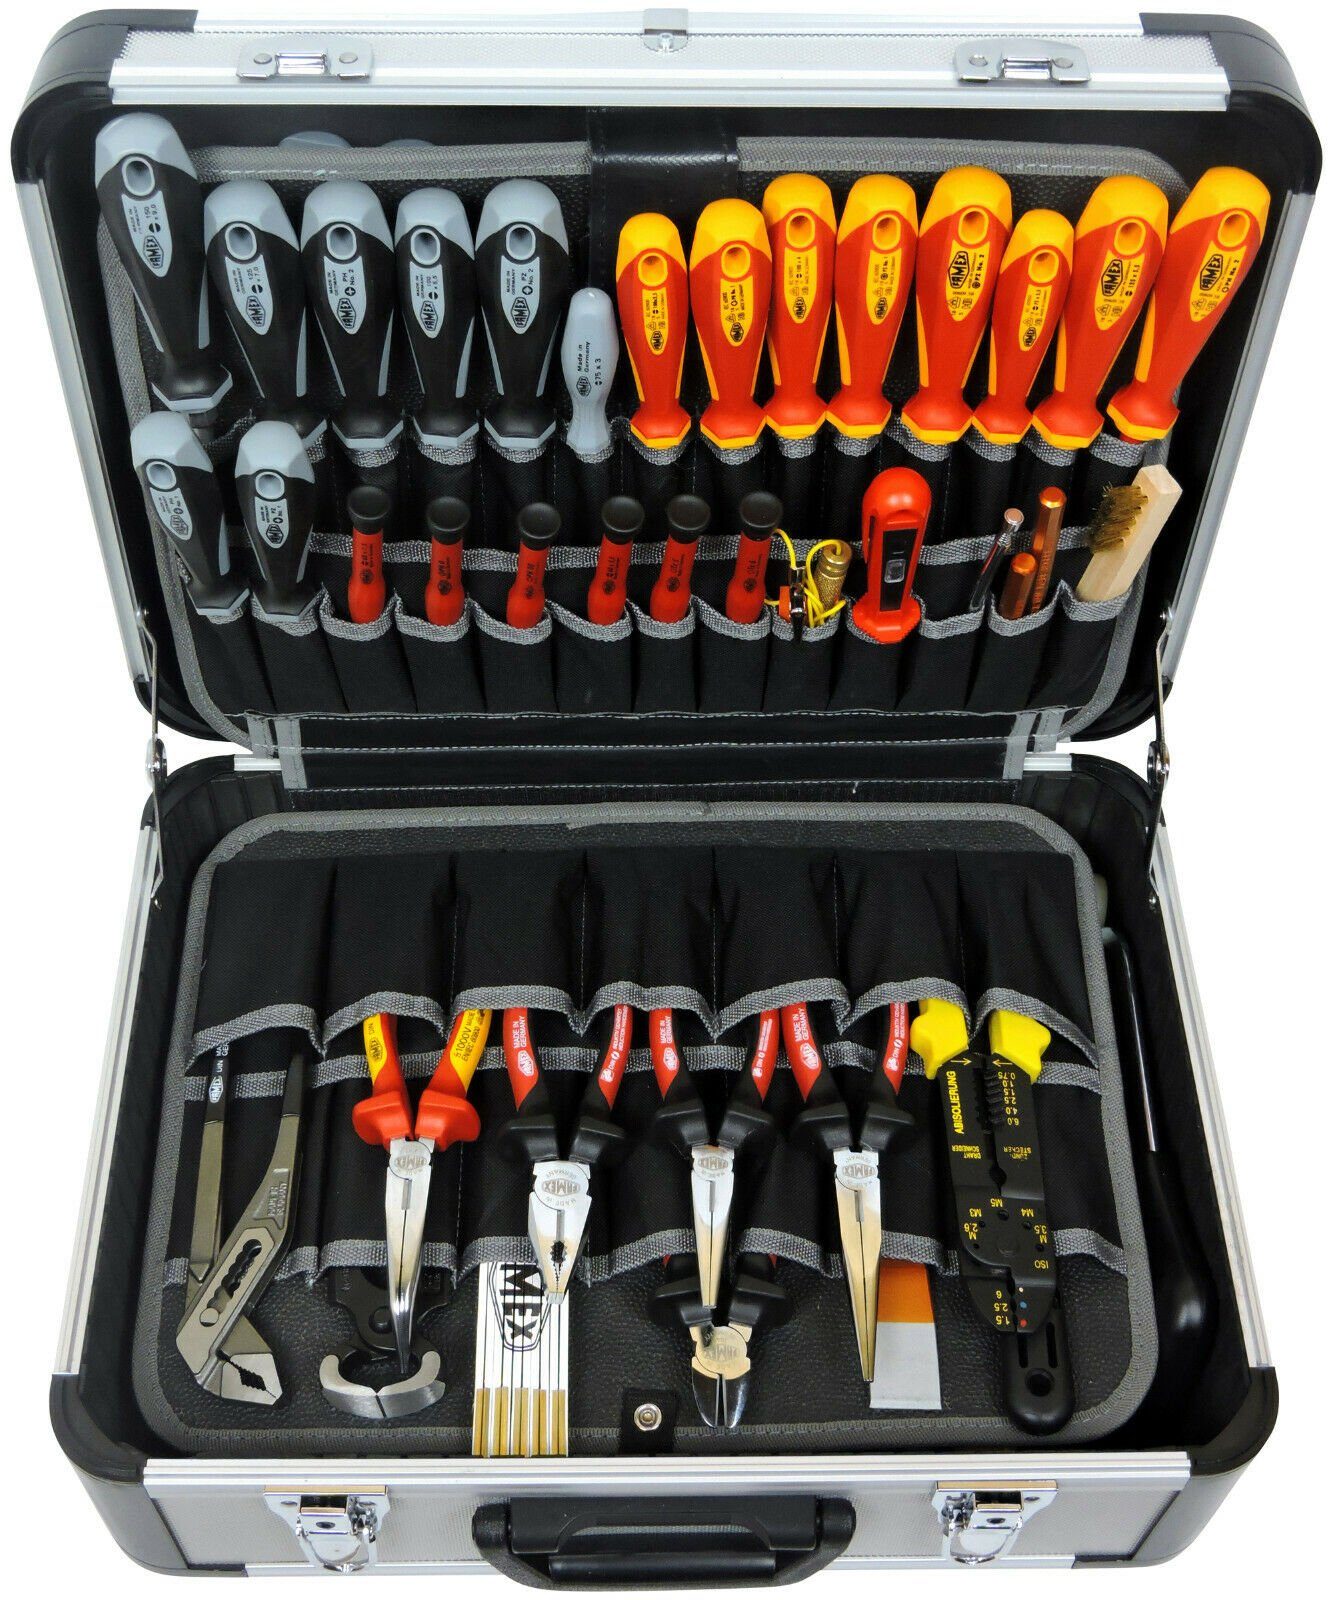 FAMEX Werkzeugkoffer »FAMEX 700-L Alu Werkzeugkoffer leer ohne Werkzeug -  Robuster Koffer aus Aluminium - Werkzeugkiste Werkzeugkasten« ( Werkzeugkoffer), in TOP-Qualität online kaufen | OTTO